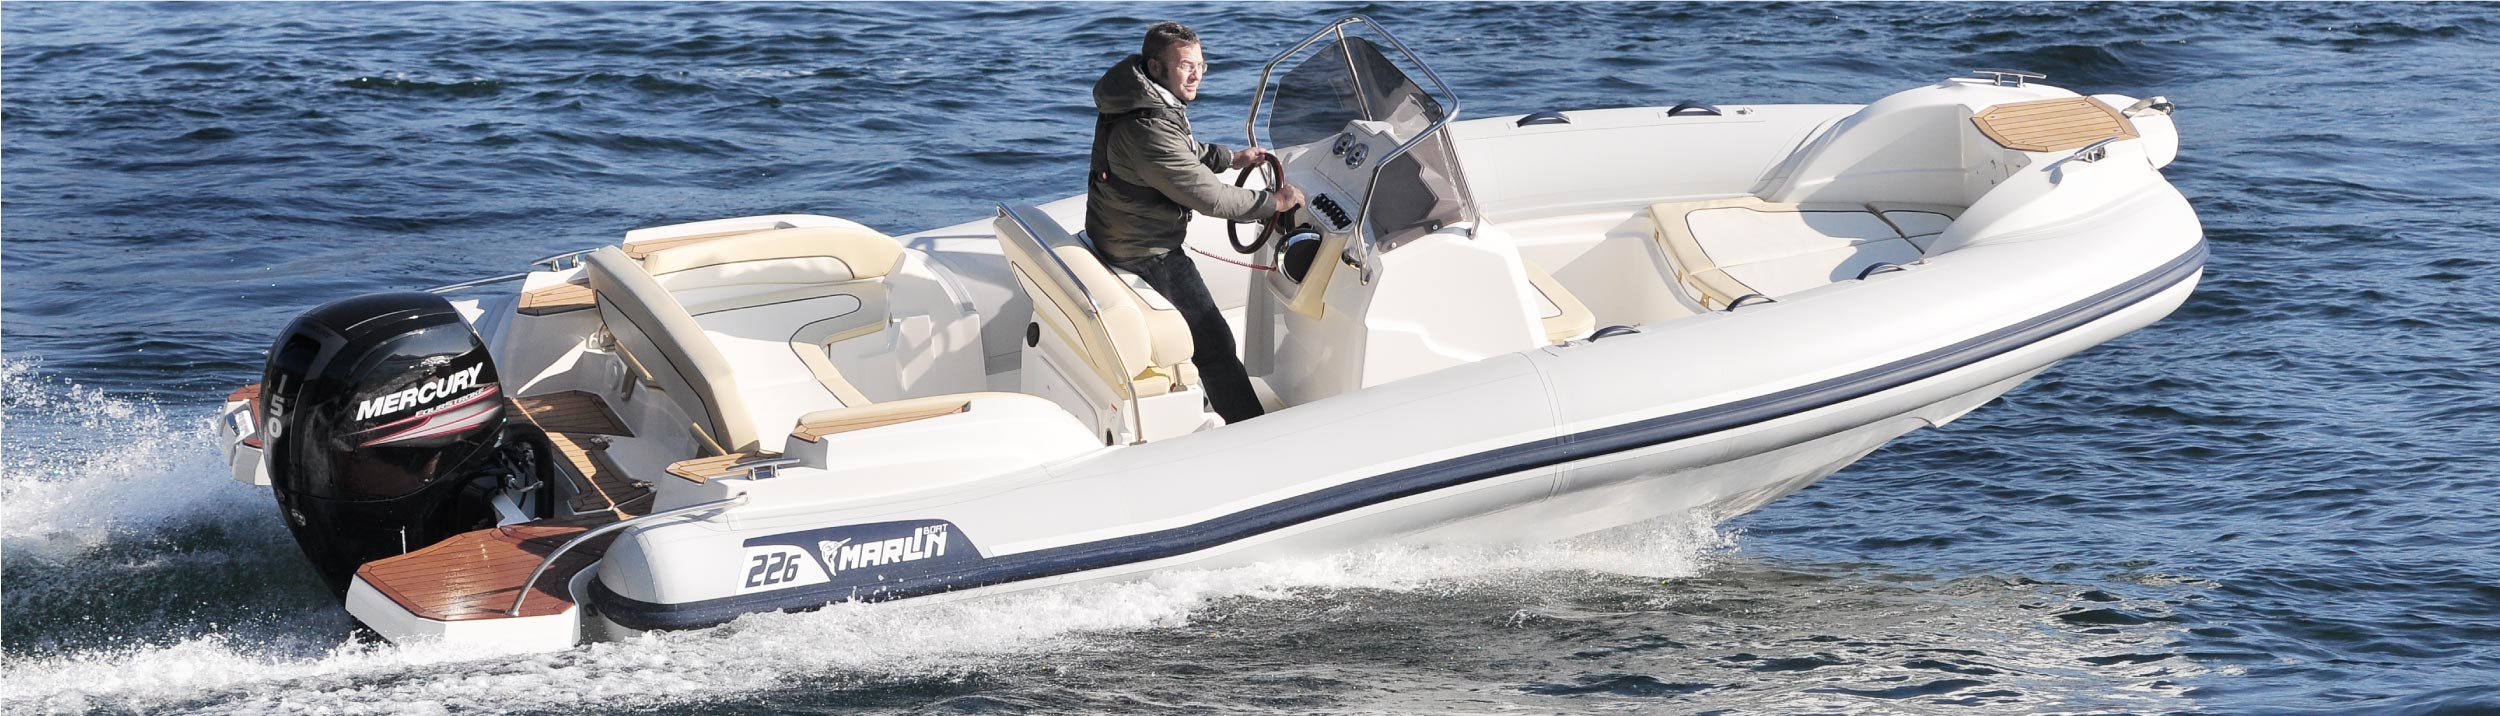 Marlin Boat - Gommone Fuoribordo Modello 226